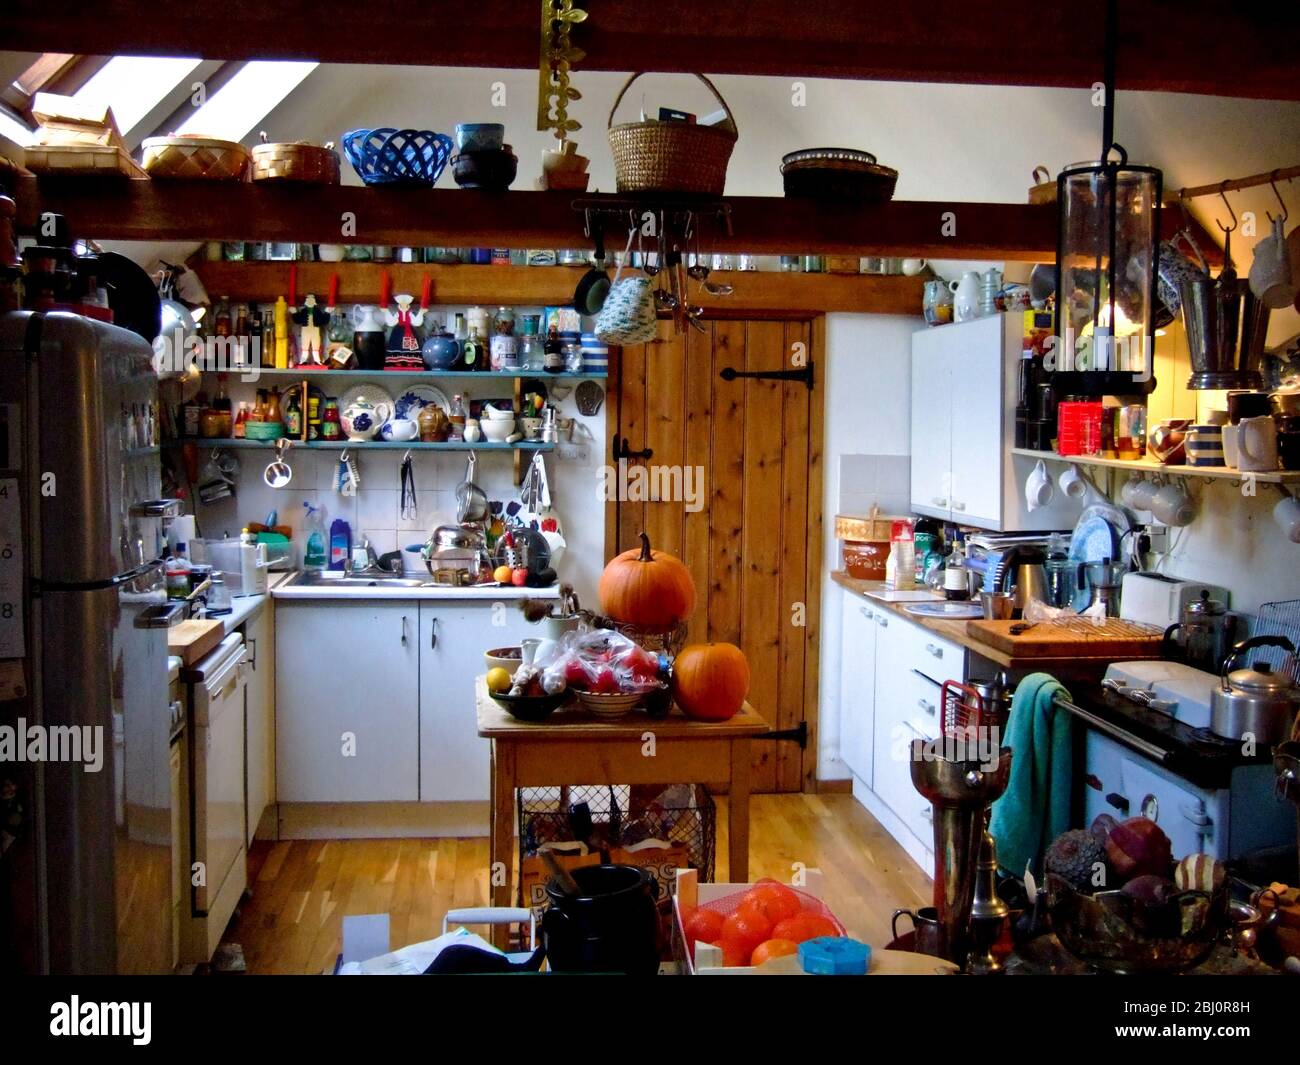 Cucina di campagna con stufa a petrolio Rayburn, moderno frigorifero retro Smeg, e un sacco di roba, cestini, verdure, ecc - Foto Stock